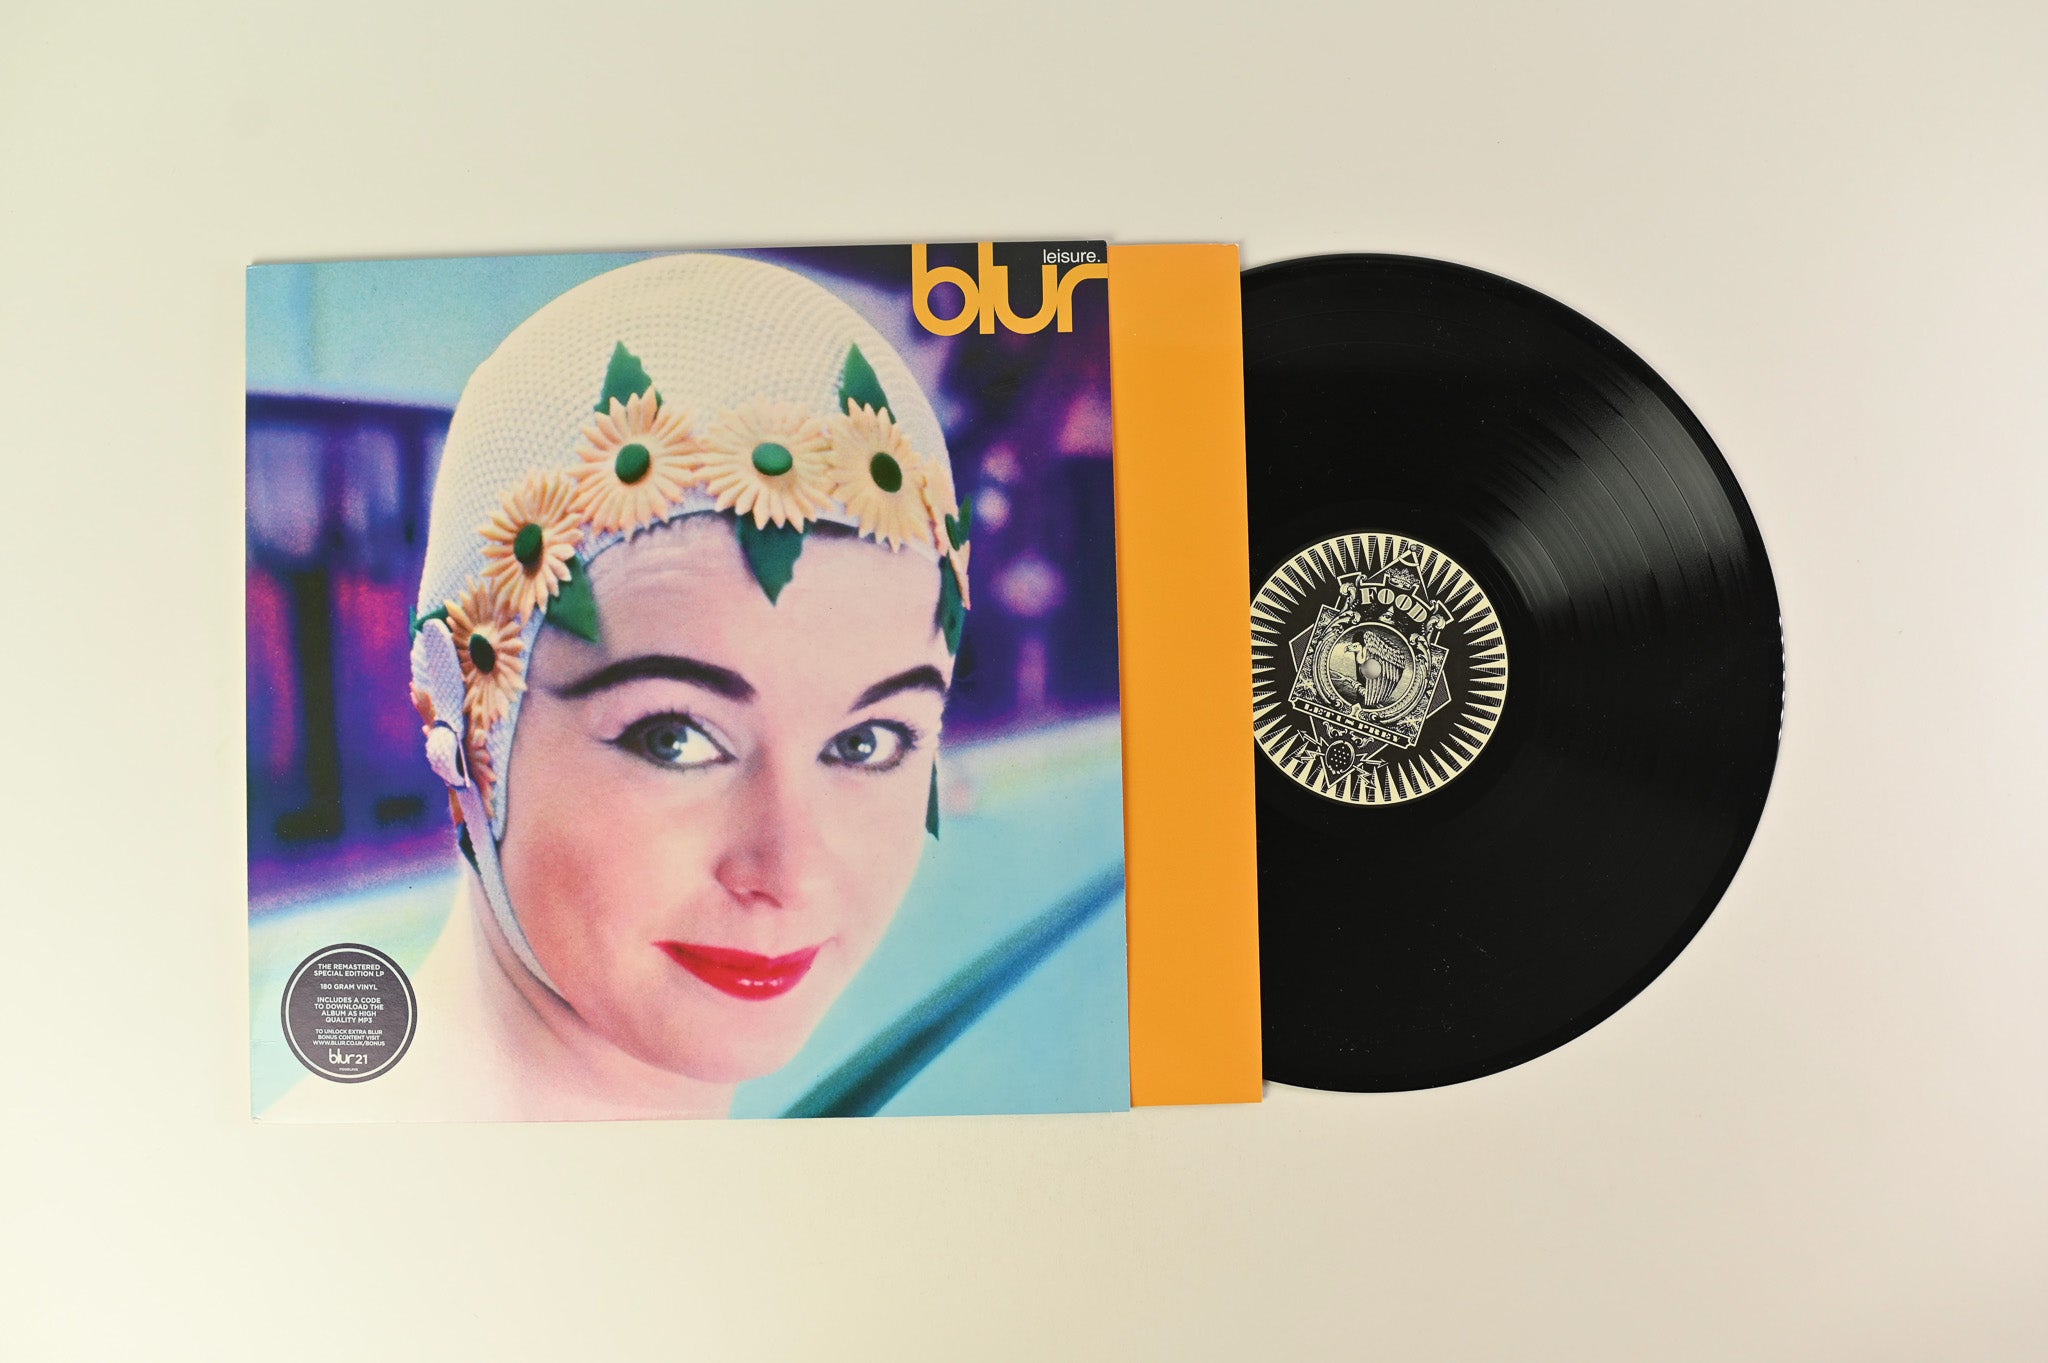 Blur - Leisure on Parlophone Remastered Reissue